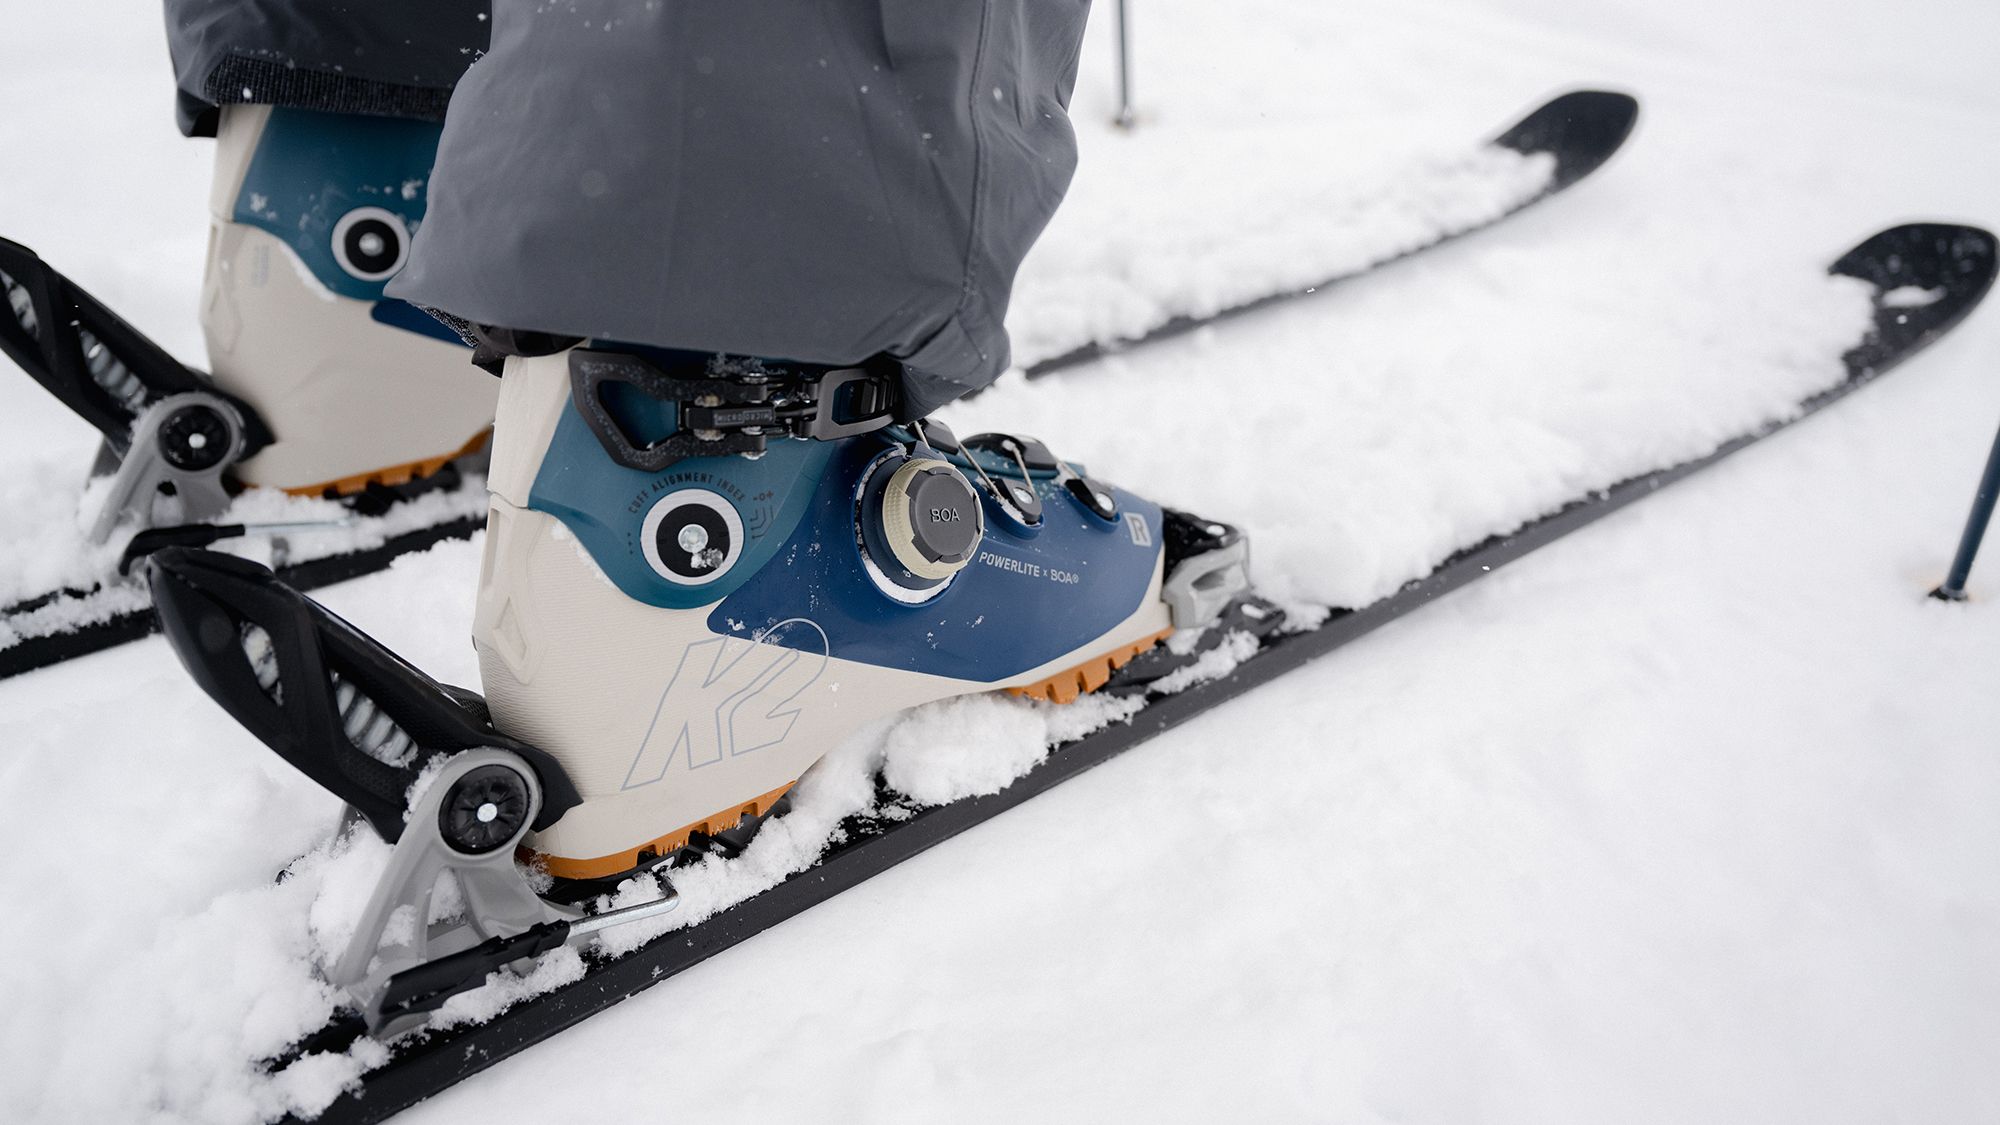 triatlon Uitdrukking beeld K2 heeft primeur met BOA op skischoen - Wintersport weblog